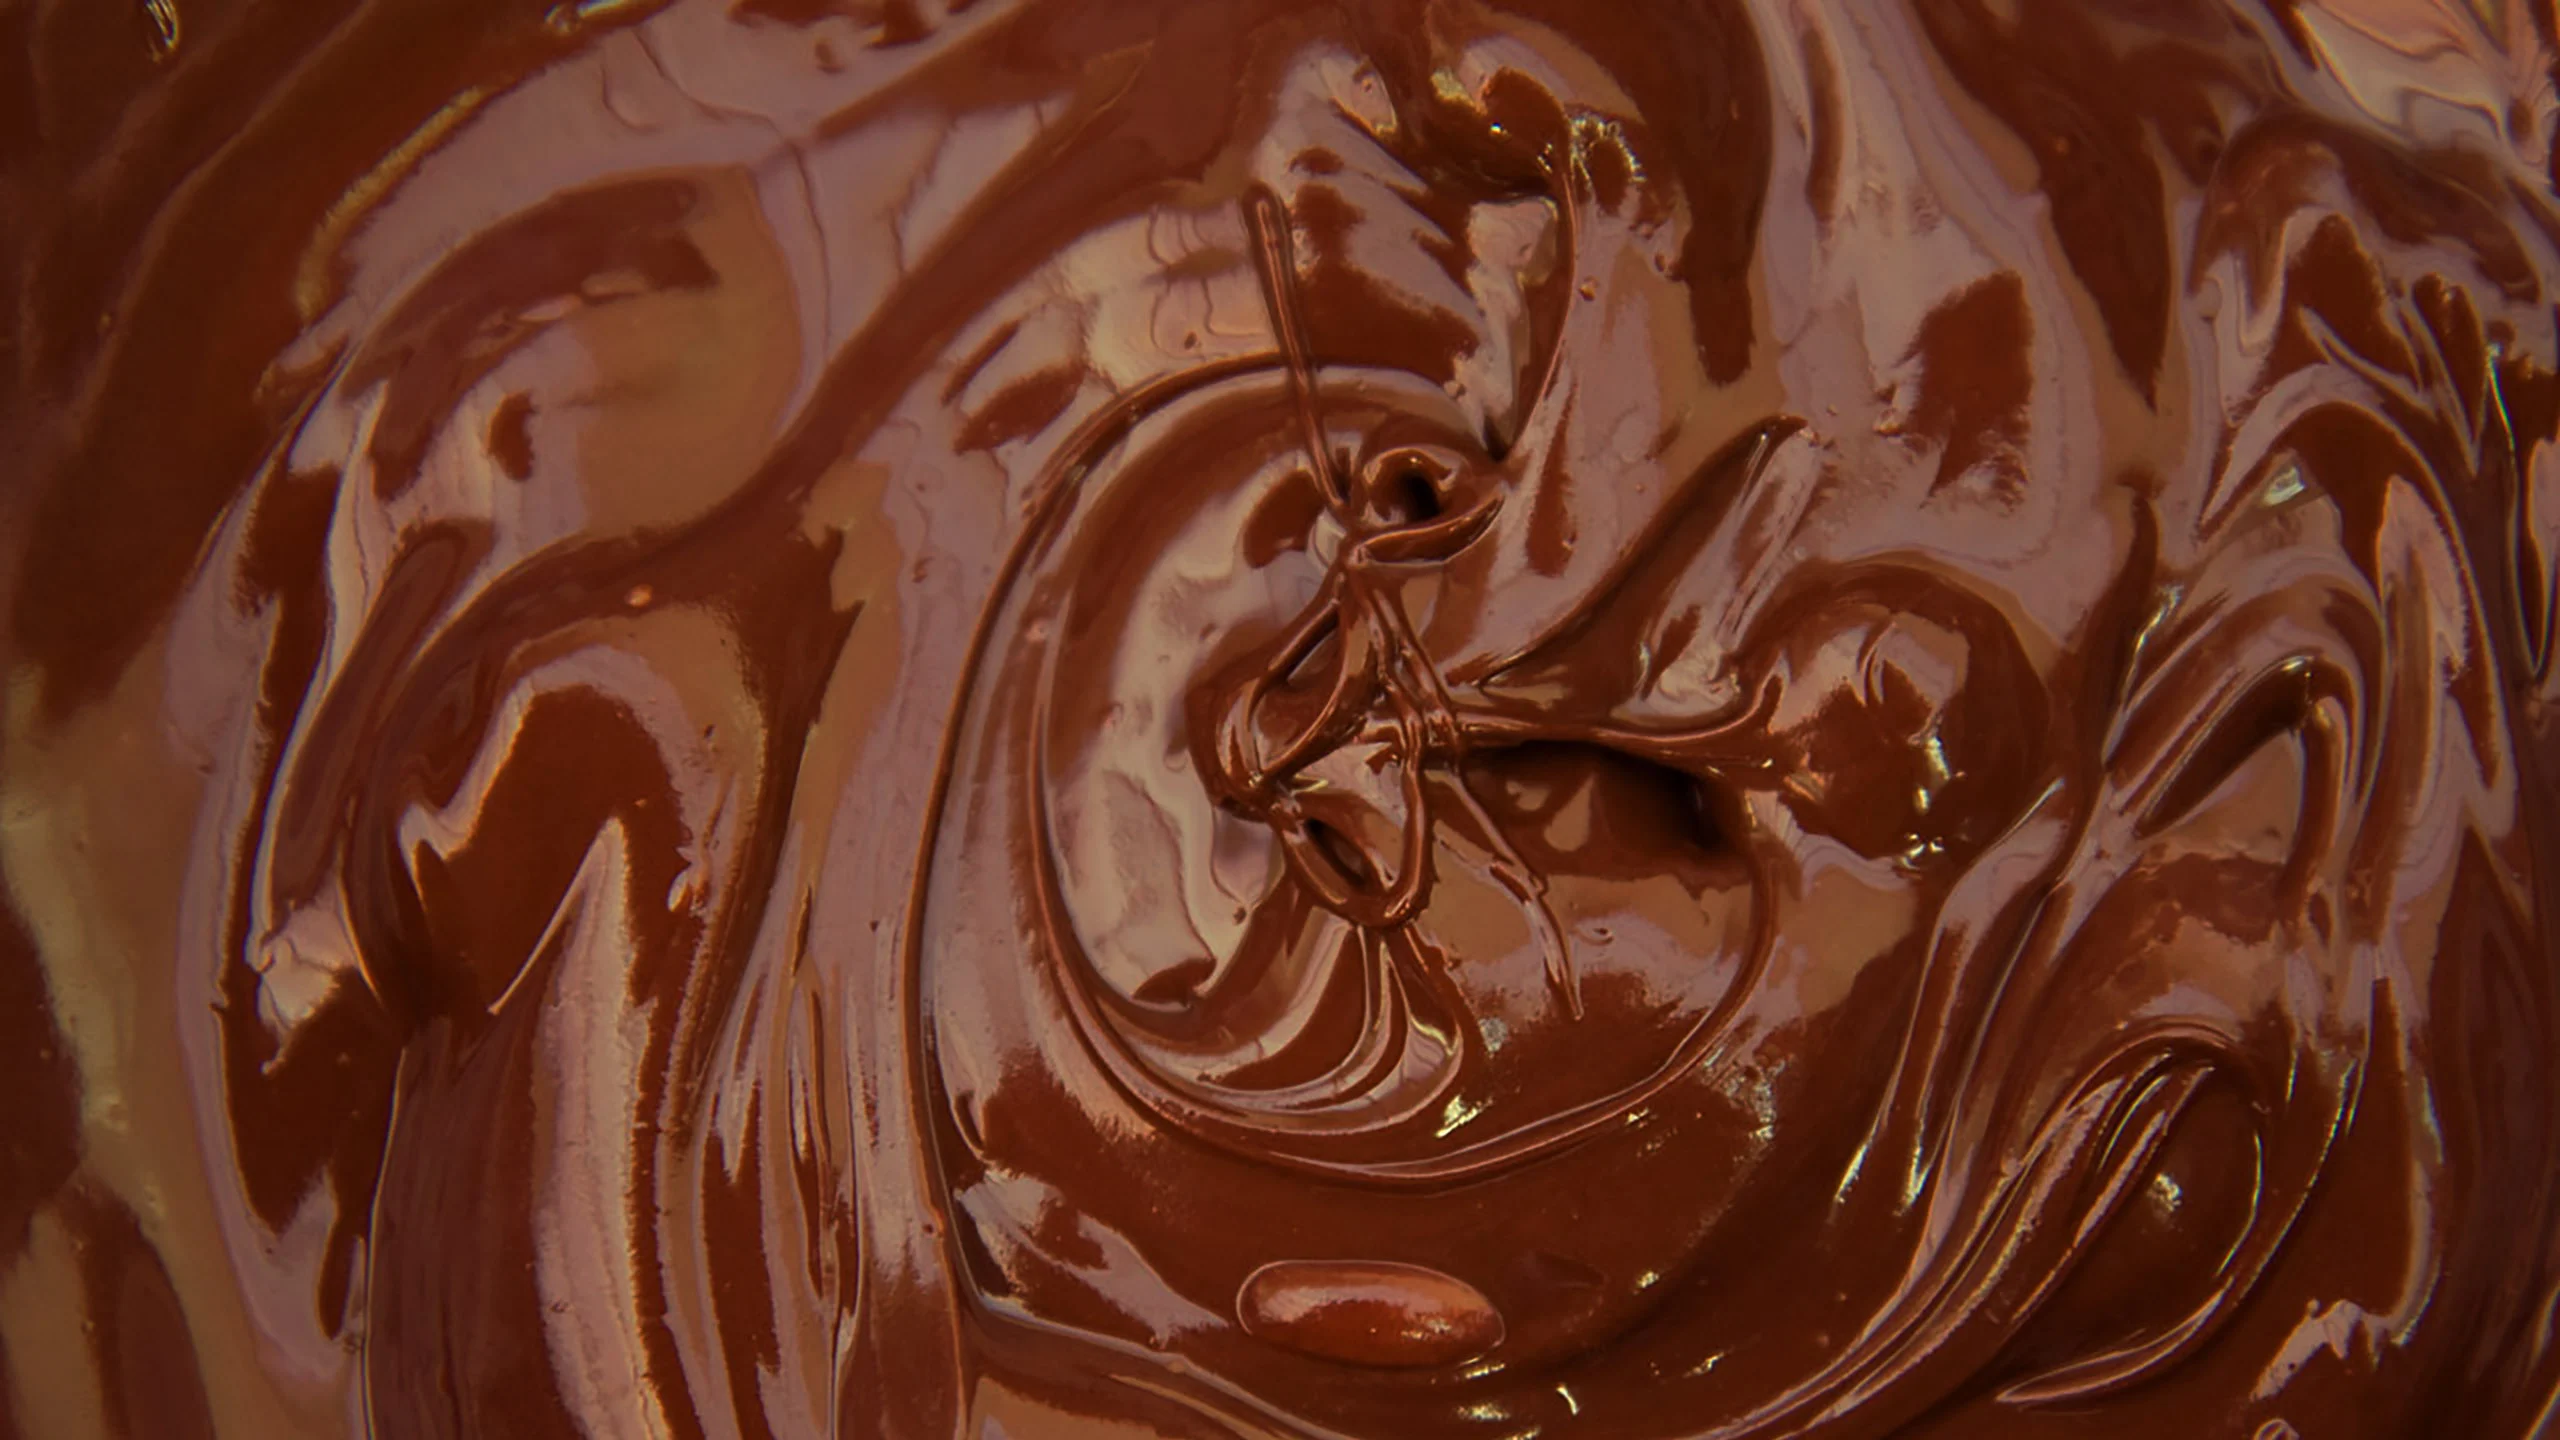 El derrame de una tonelada de chocolate que cubrió una calle de Alemania